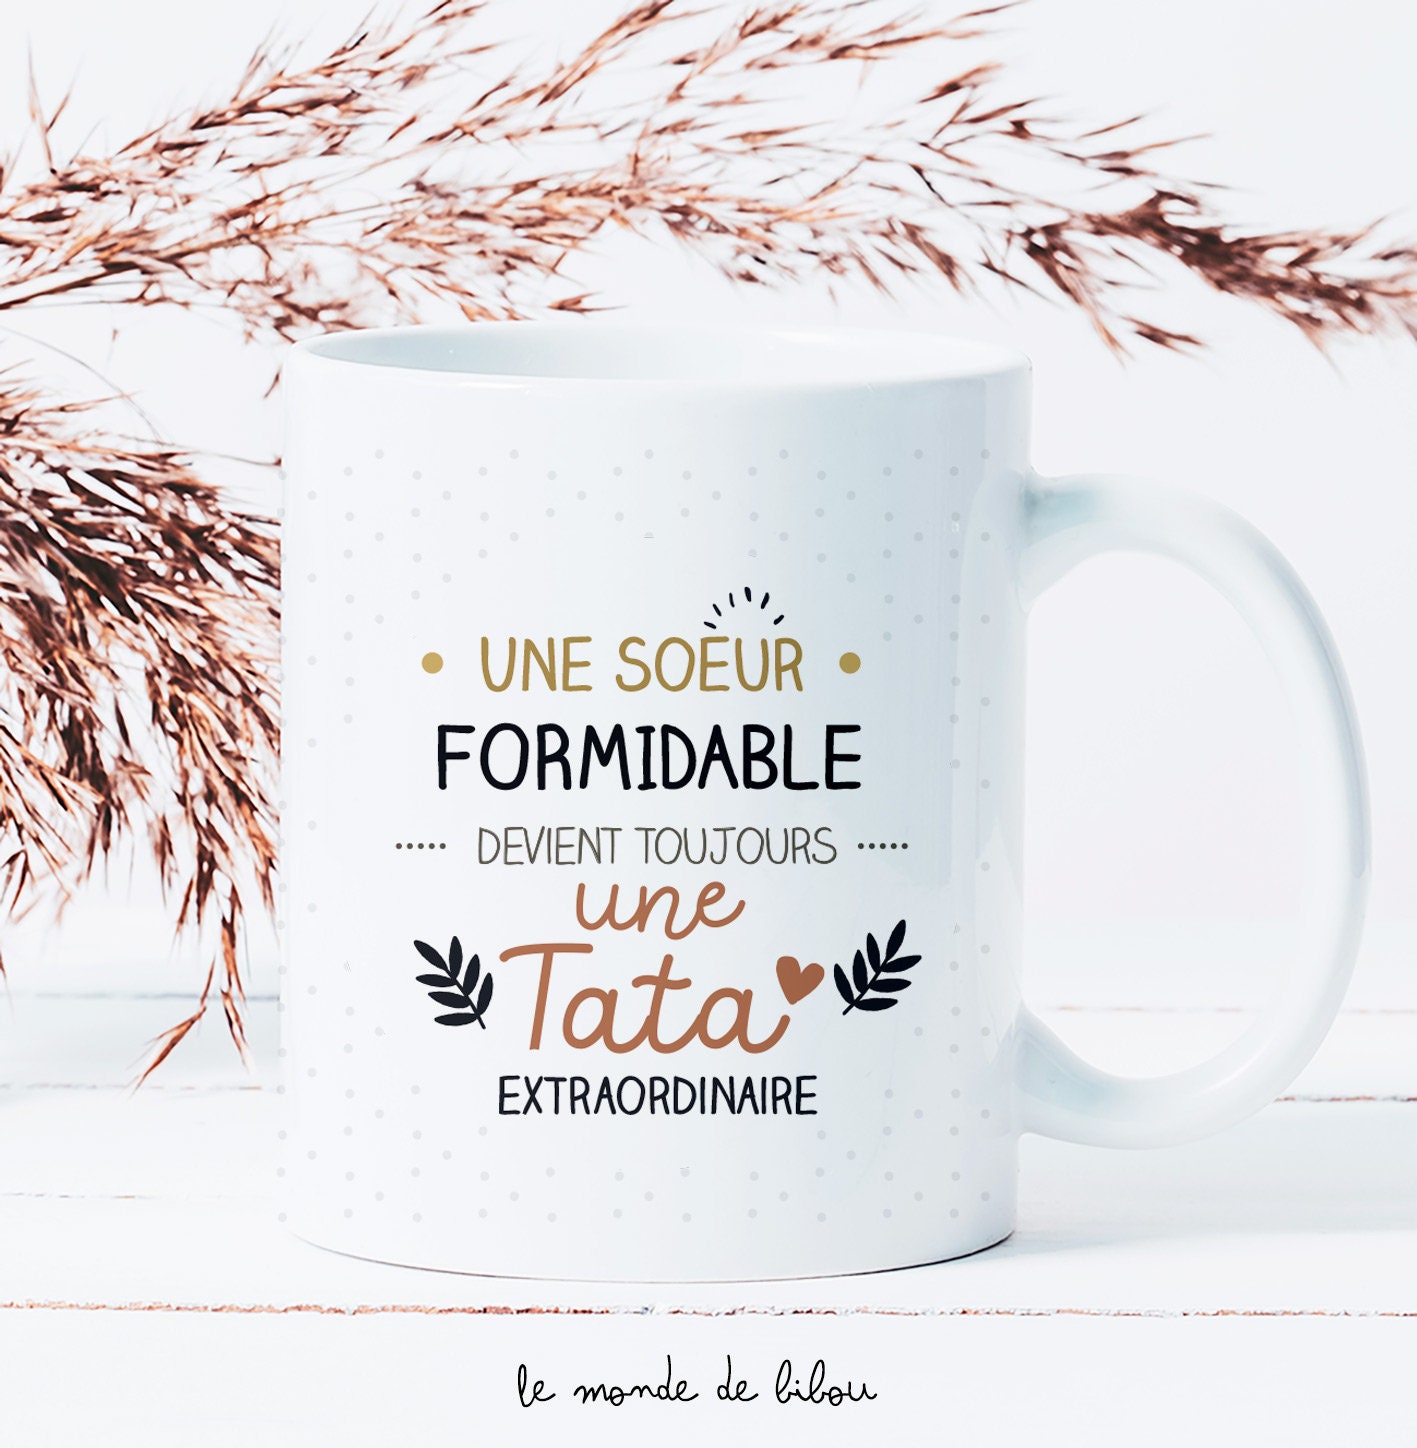 Tasse Mug Cadeau Soeur Anniversaire - Ma Soeur c'est Comme Le Café Elle a  Un Grain Mais Je l'Adore - Idée Originale L'Esprit de